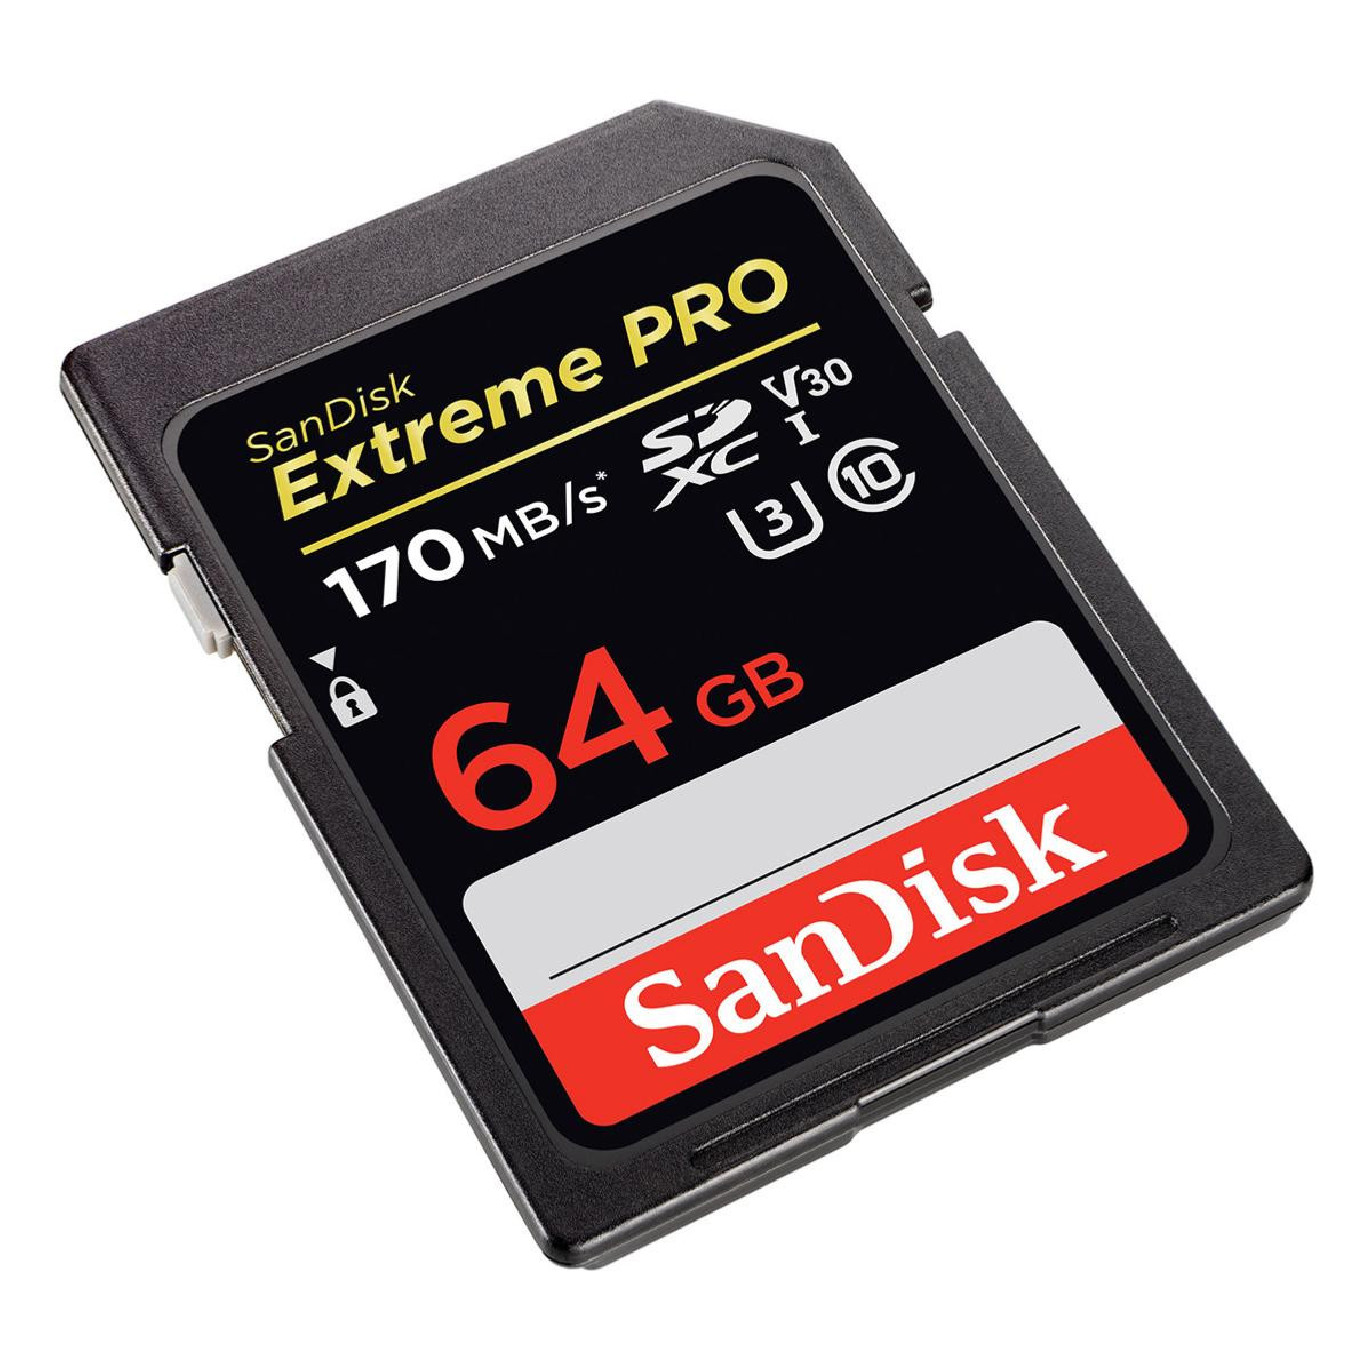 Carte mémoire microSDXC Extreme Pro 64 Go - SanDisk - Bien choisir son  drone - Hubert AILE